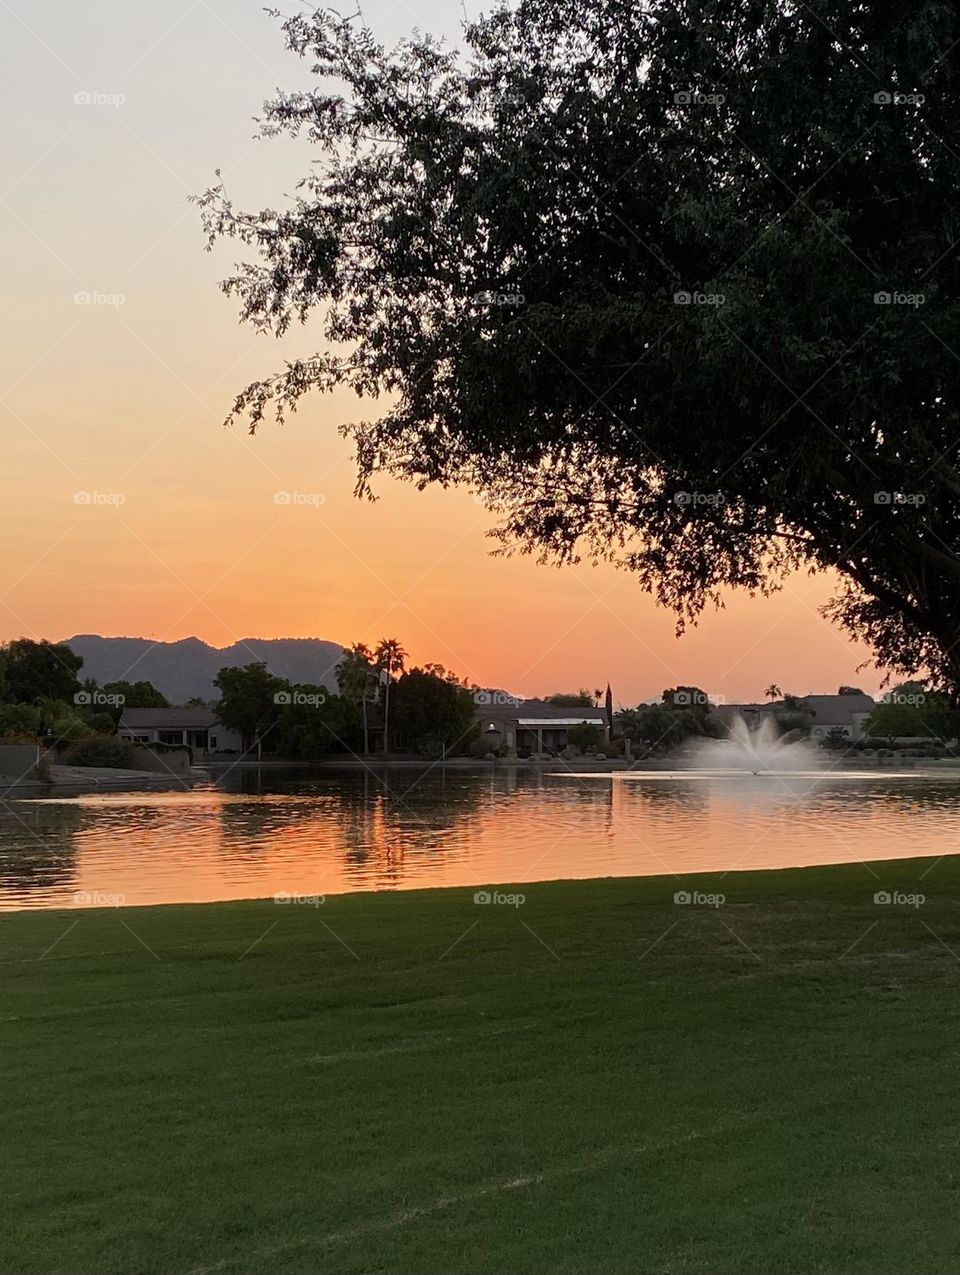 Arizona dawn